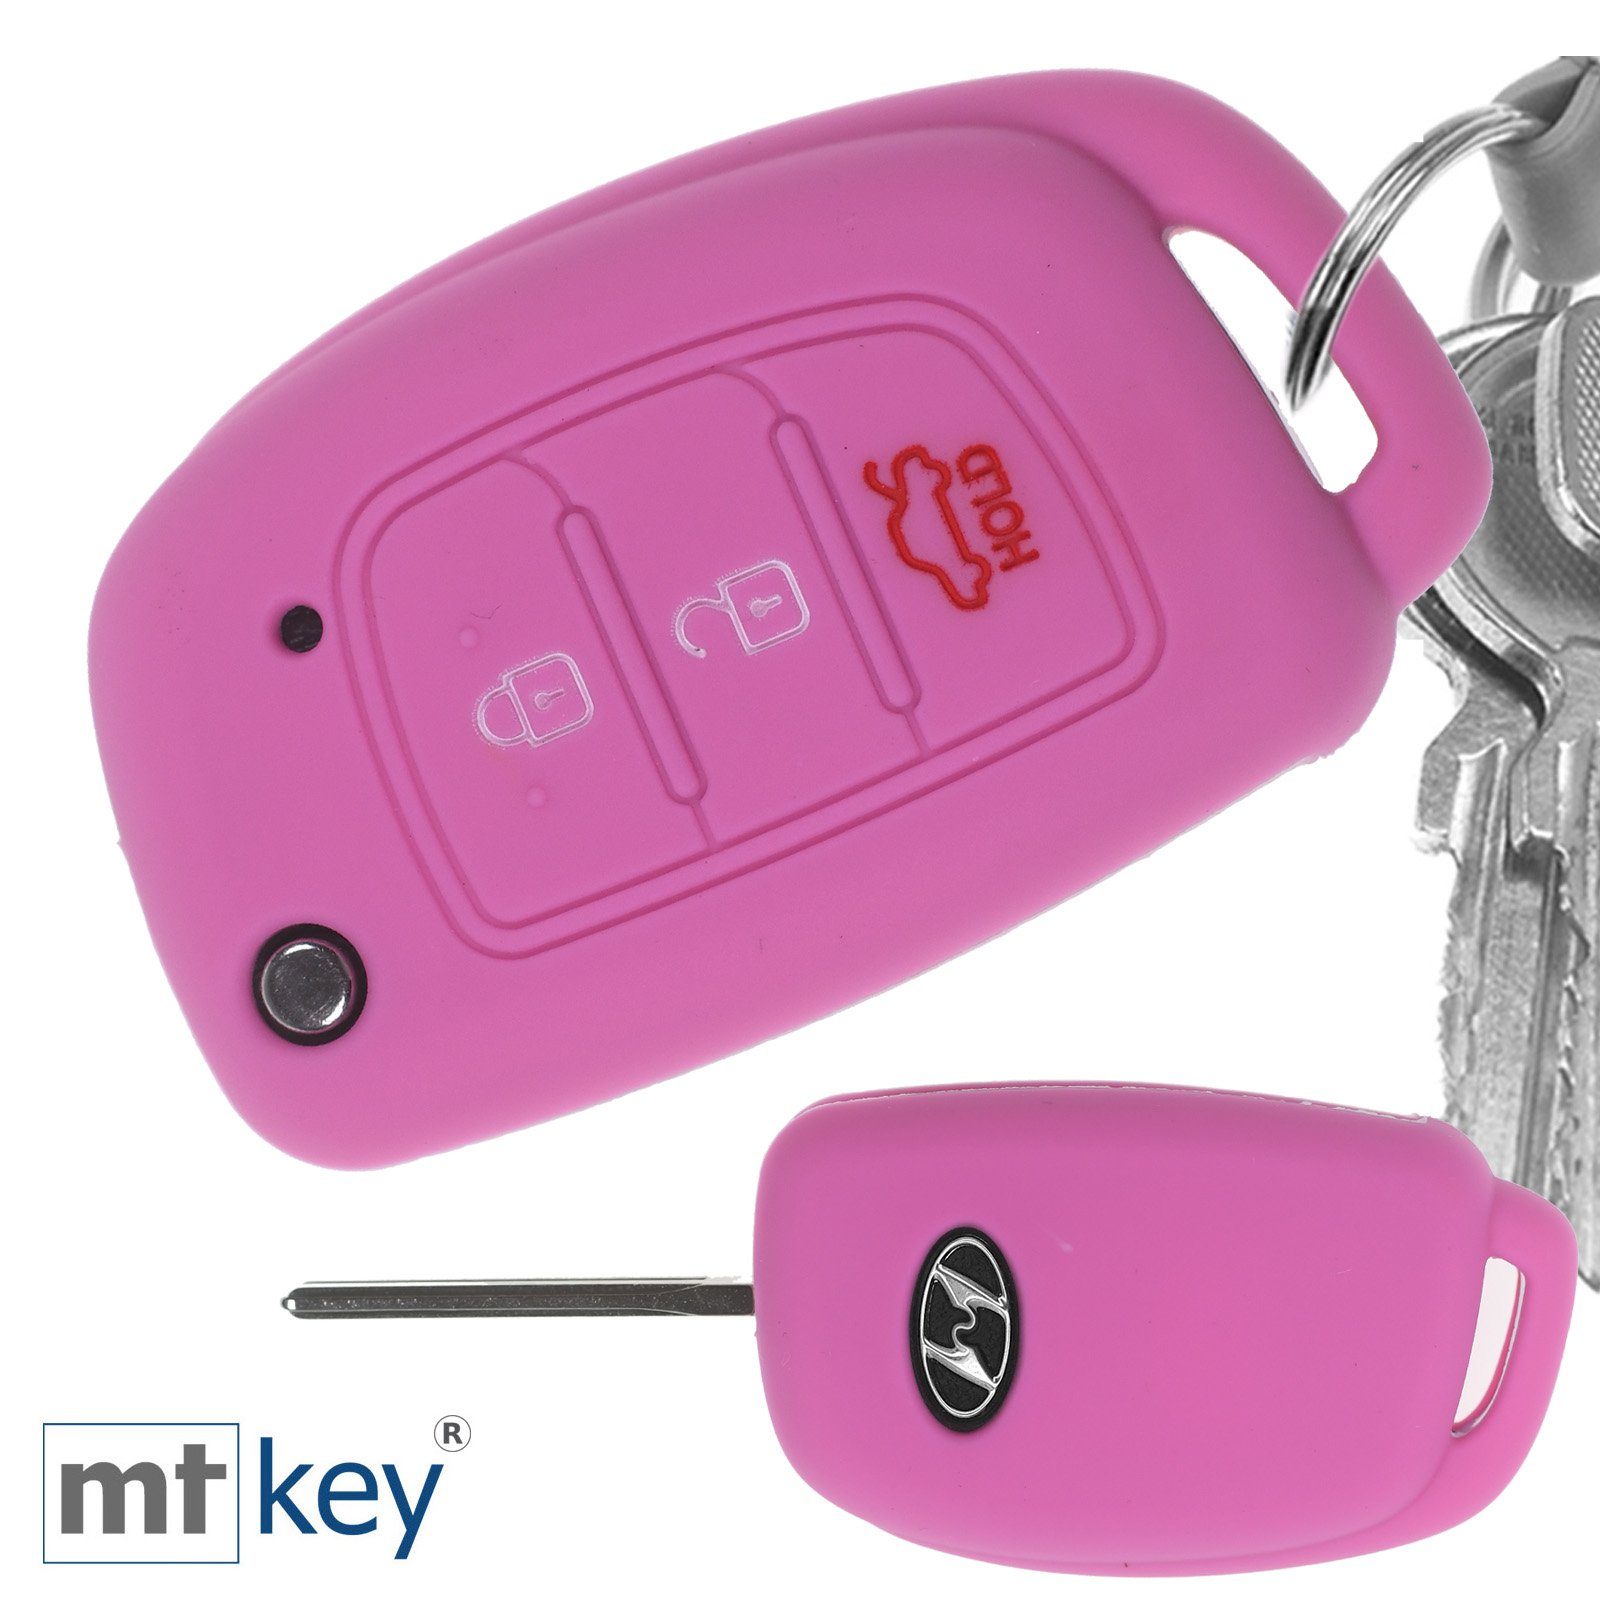 im Klappschlüssel Hyundai Accent i40 ix35 Tucson Knopf ix25 + Wabe i10 Silikon Autoschlüssel mt-key Rosa Schlüsseltasche 3 i20 für Schutzhülle Design Schlüsselband,